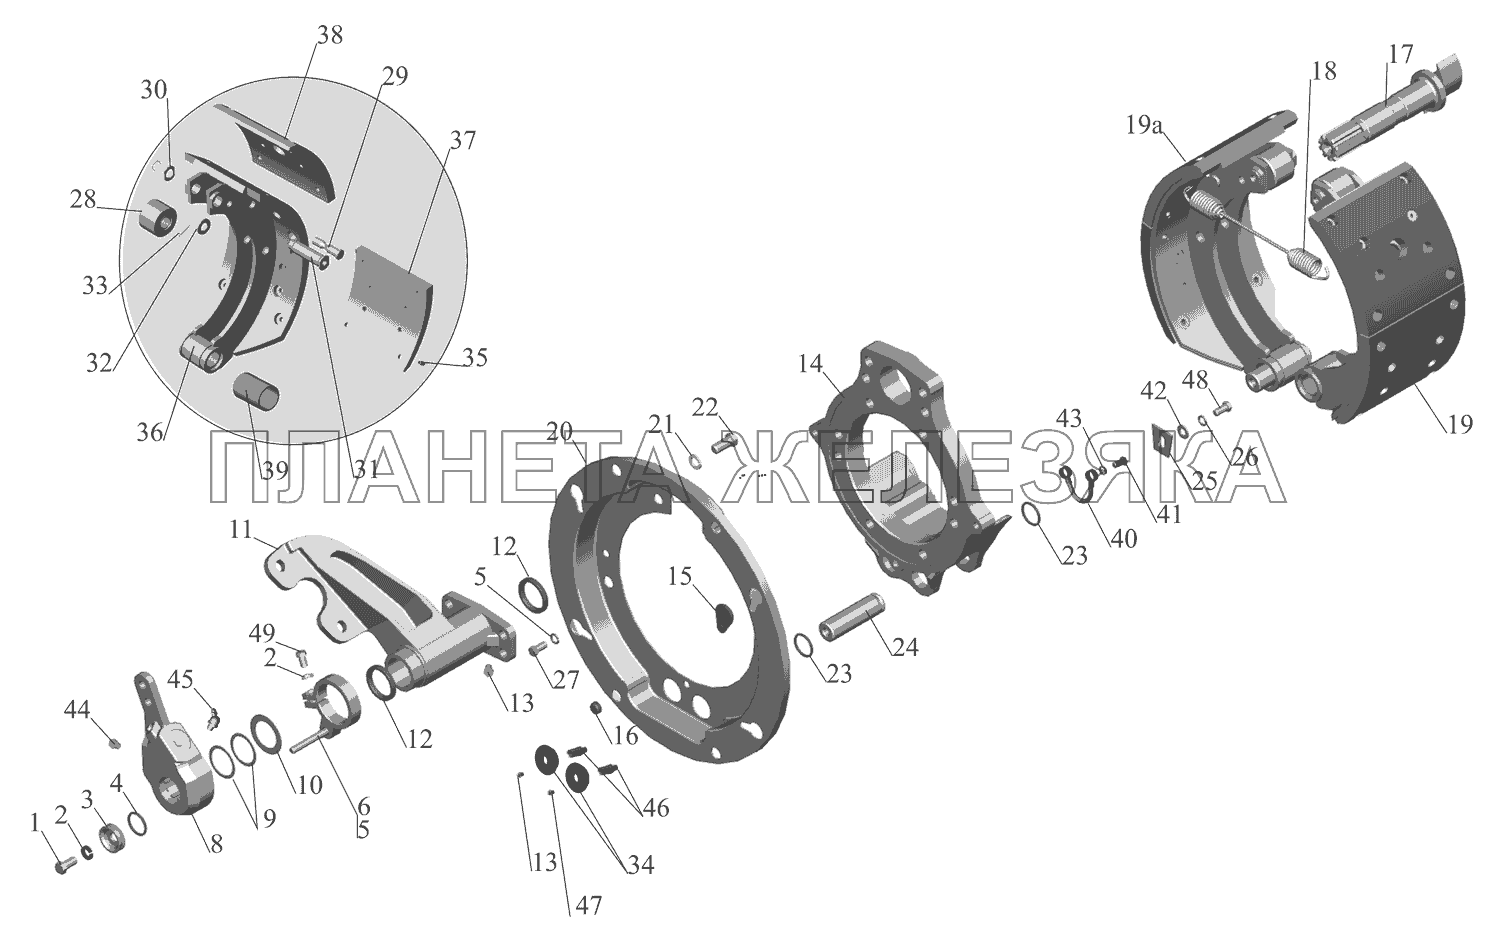 Тормозной механизм передних колес 6516-3501004 (6516-3501005) МАЗ-630333